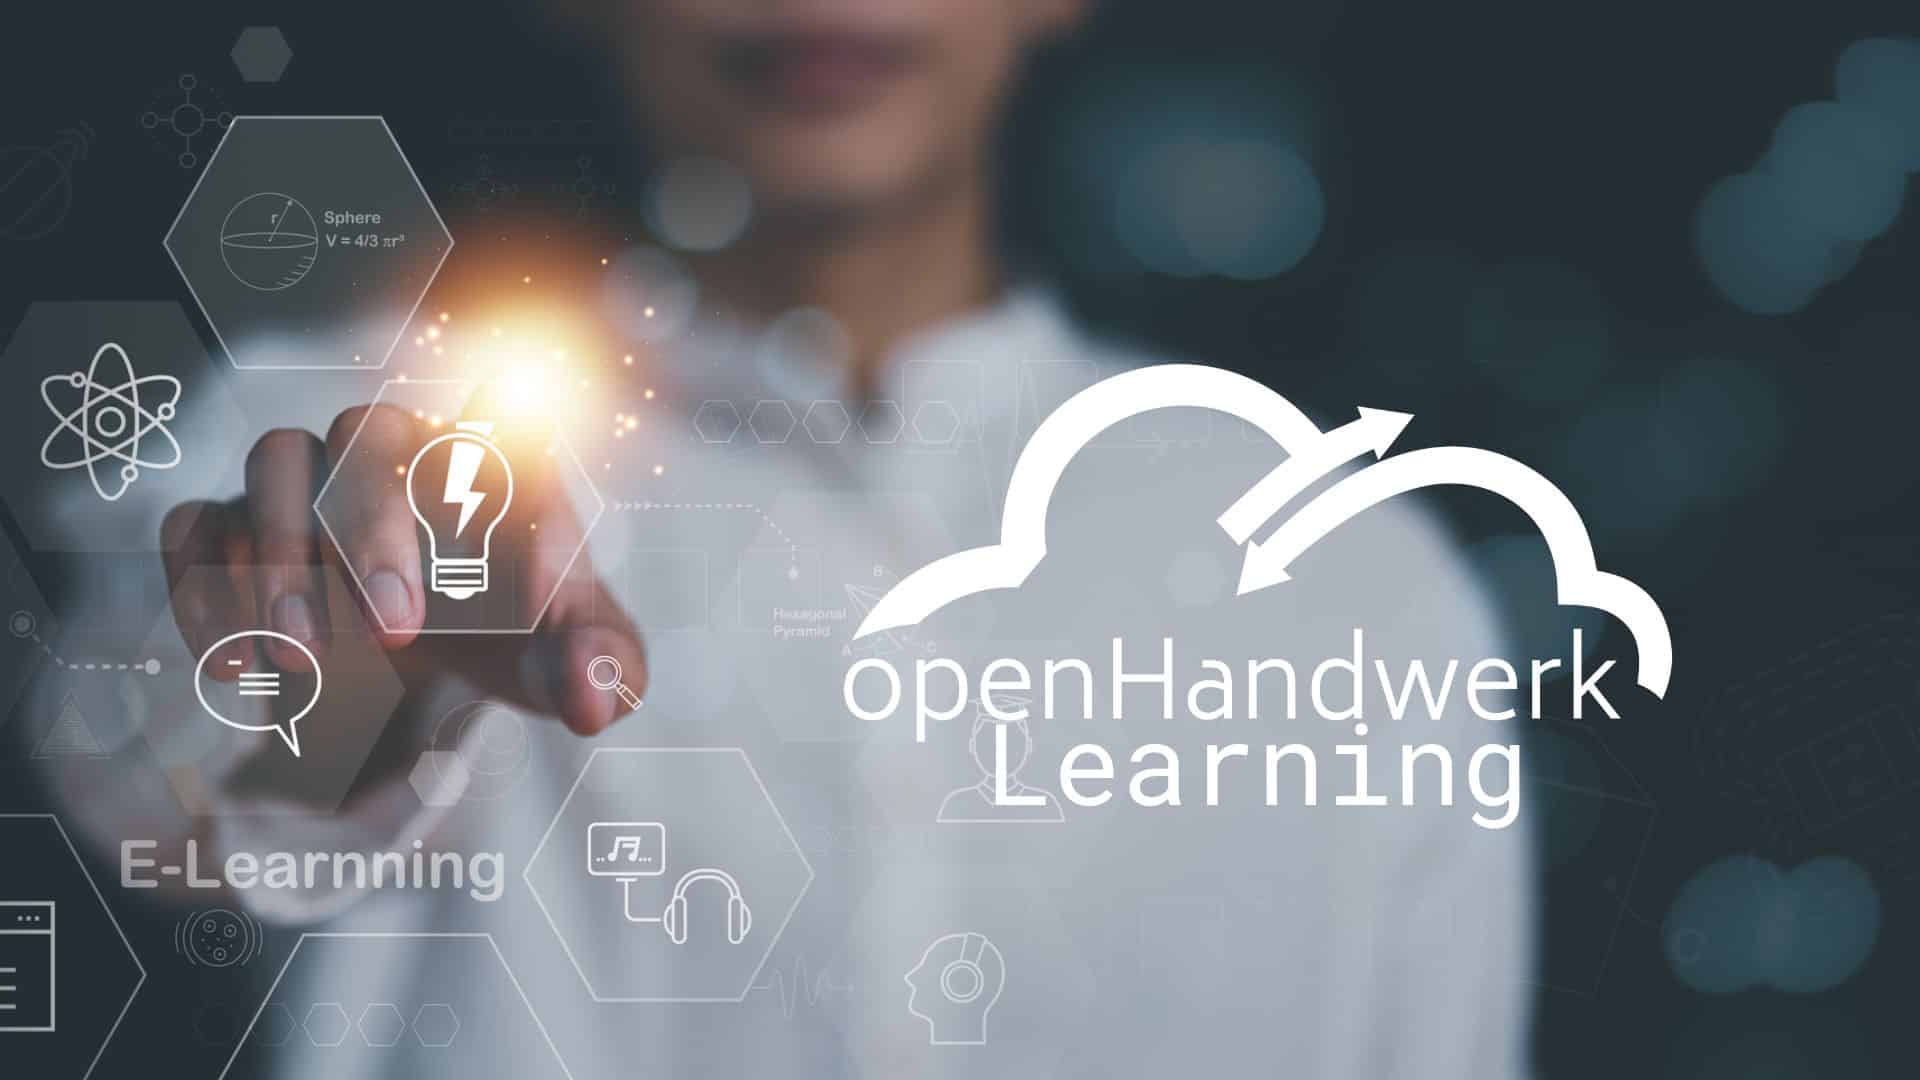 openHandwerkLearning - die kostenlose Webinar-Reihe mit 14 Lerneinheiten